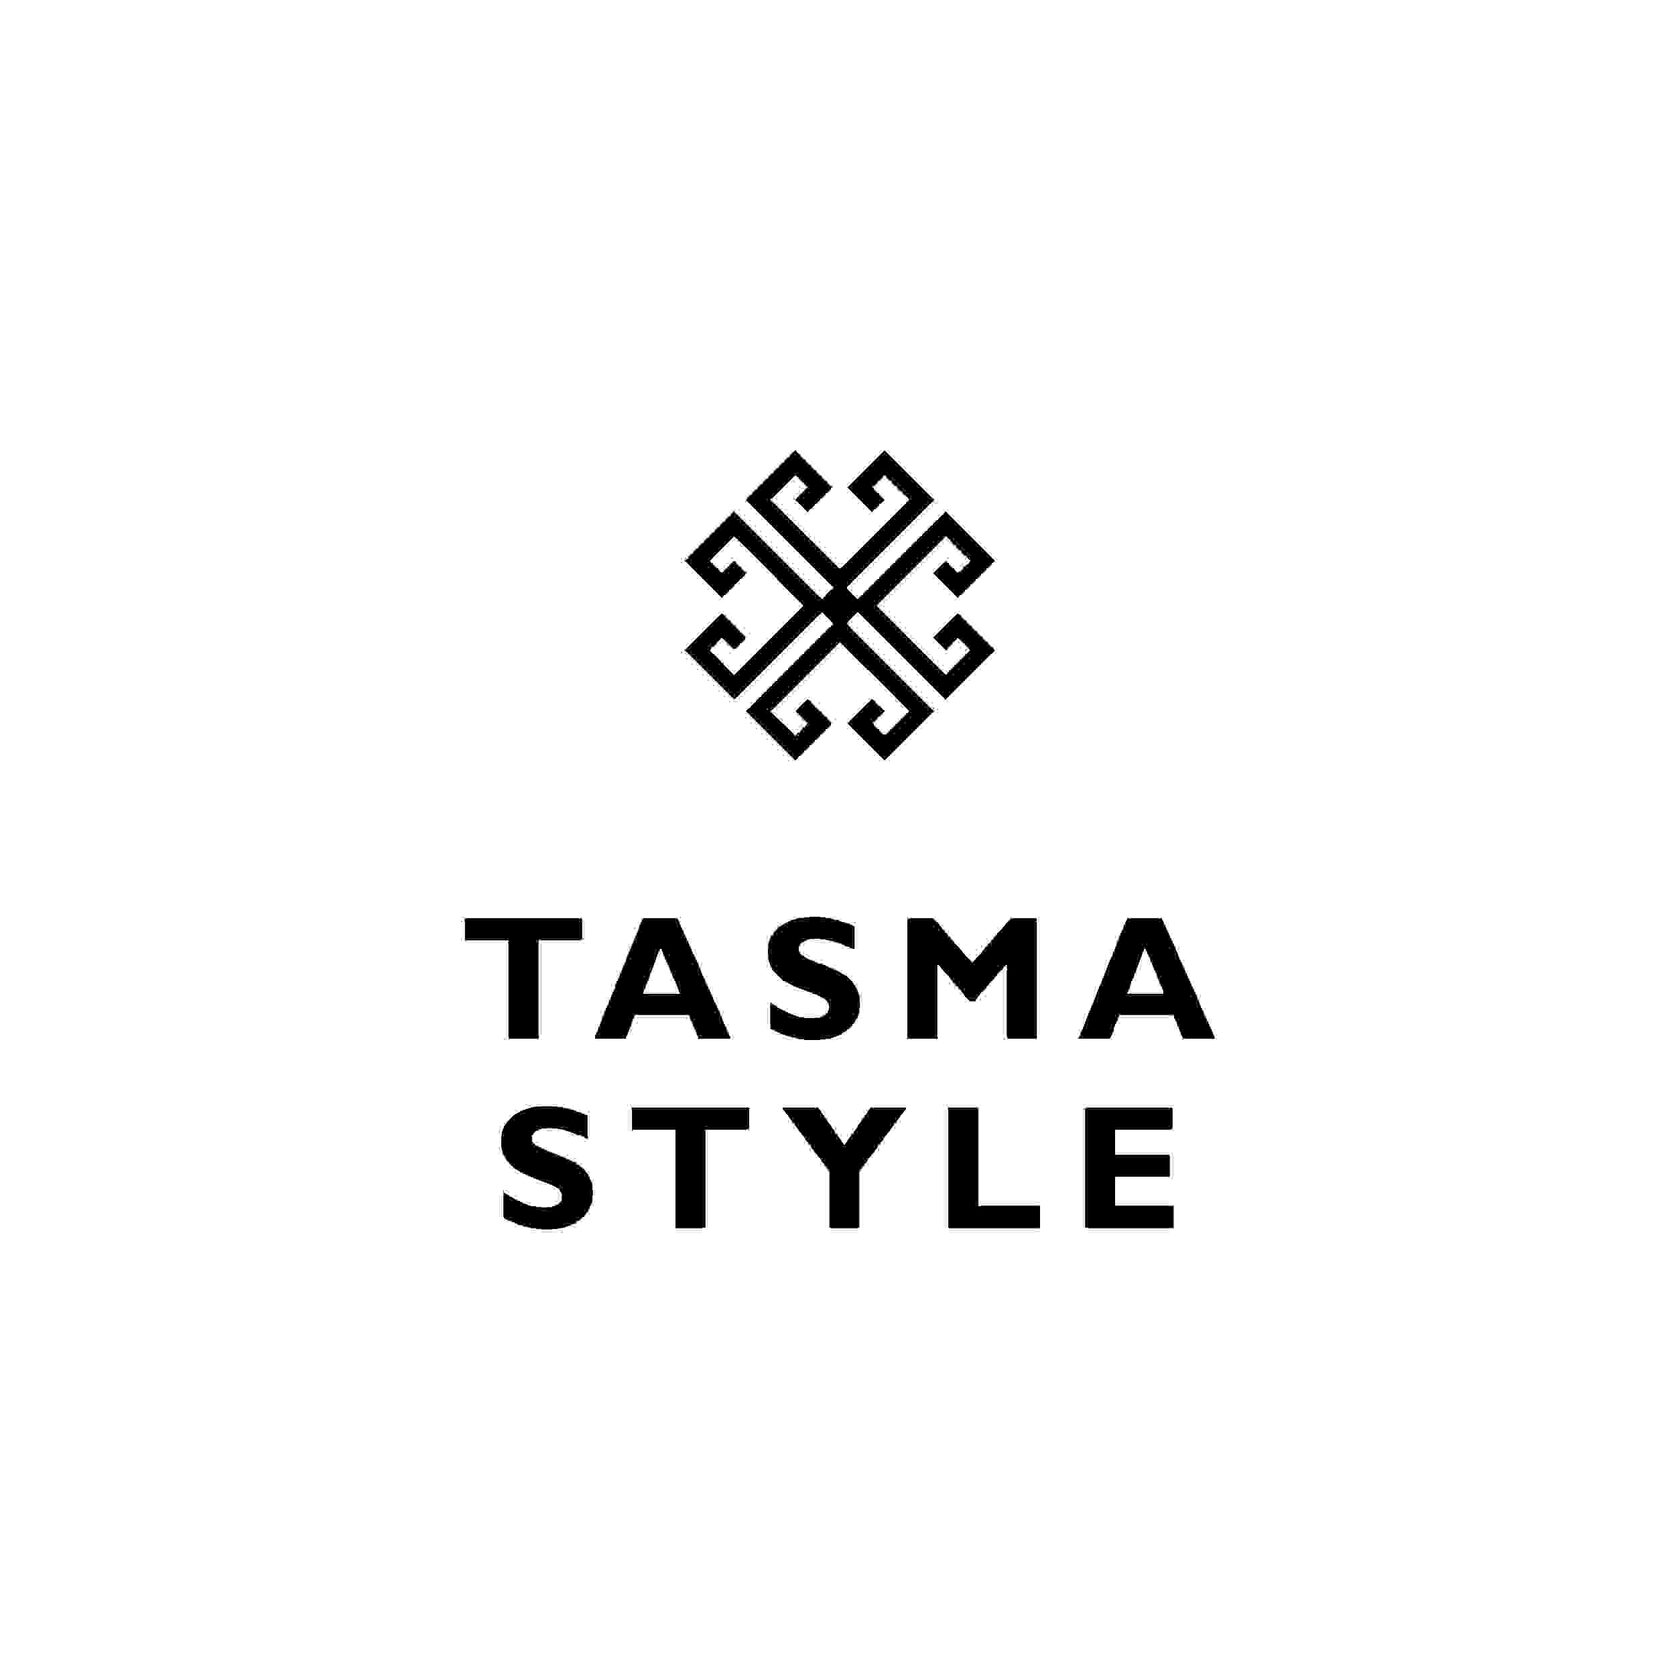 Tasma style